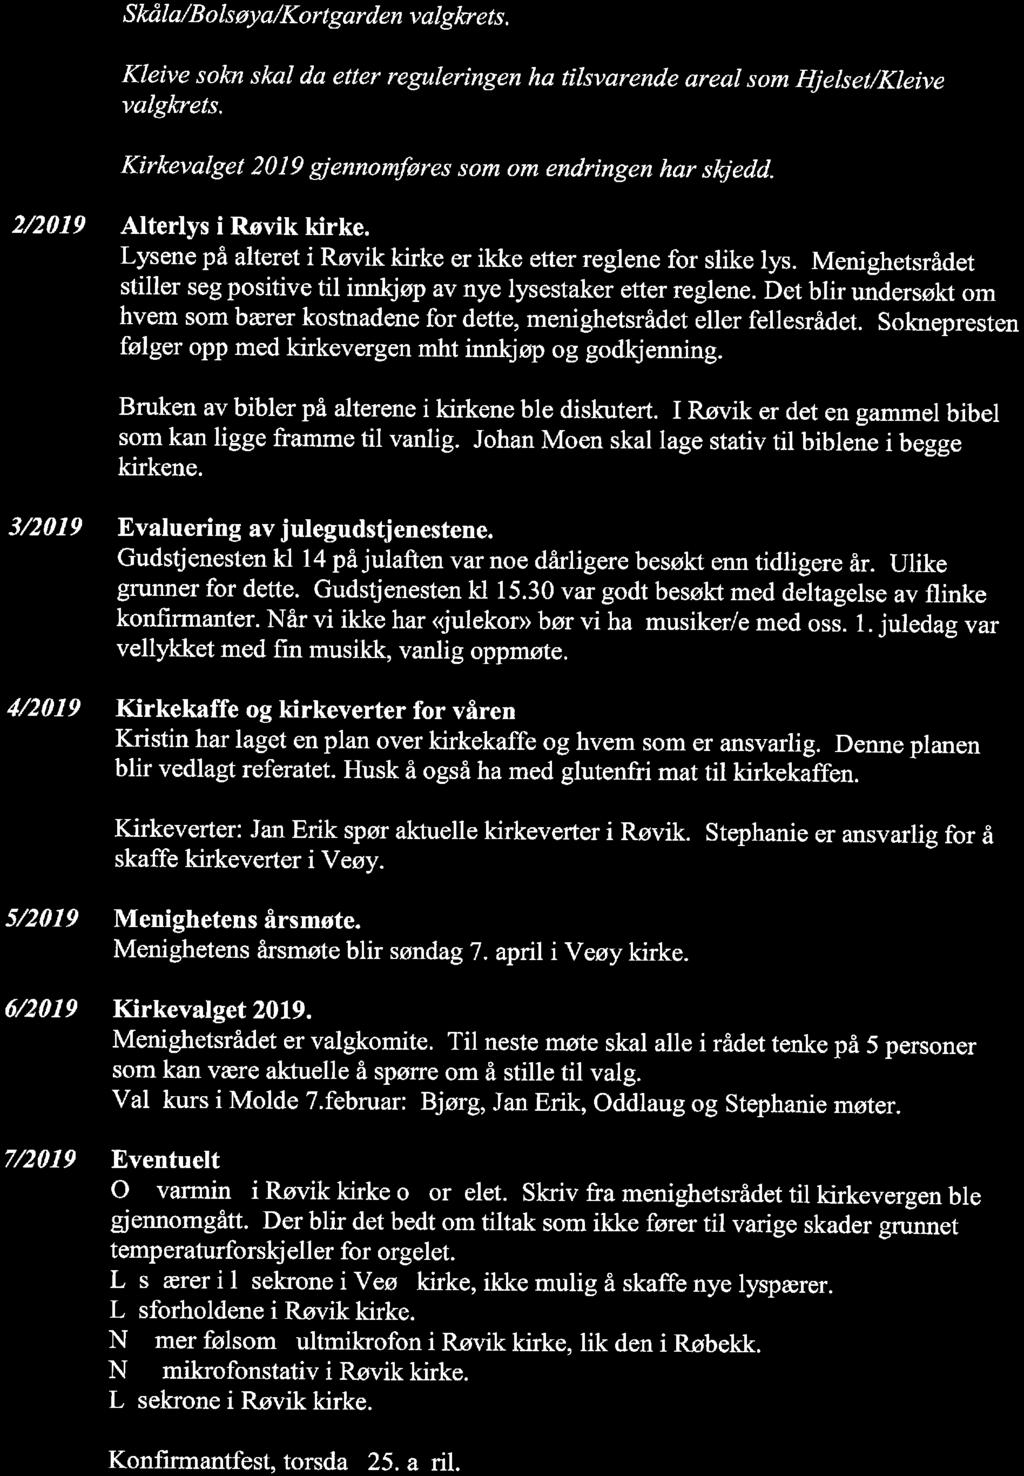 19/19 Justering av soknegrenser i Røvik-Veøy, Kleive og Bolsøy sokn - 19/00879-2